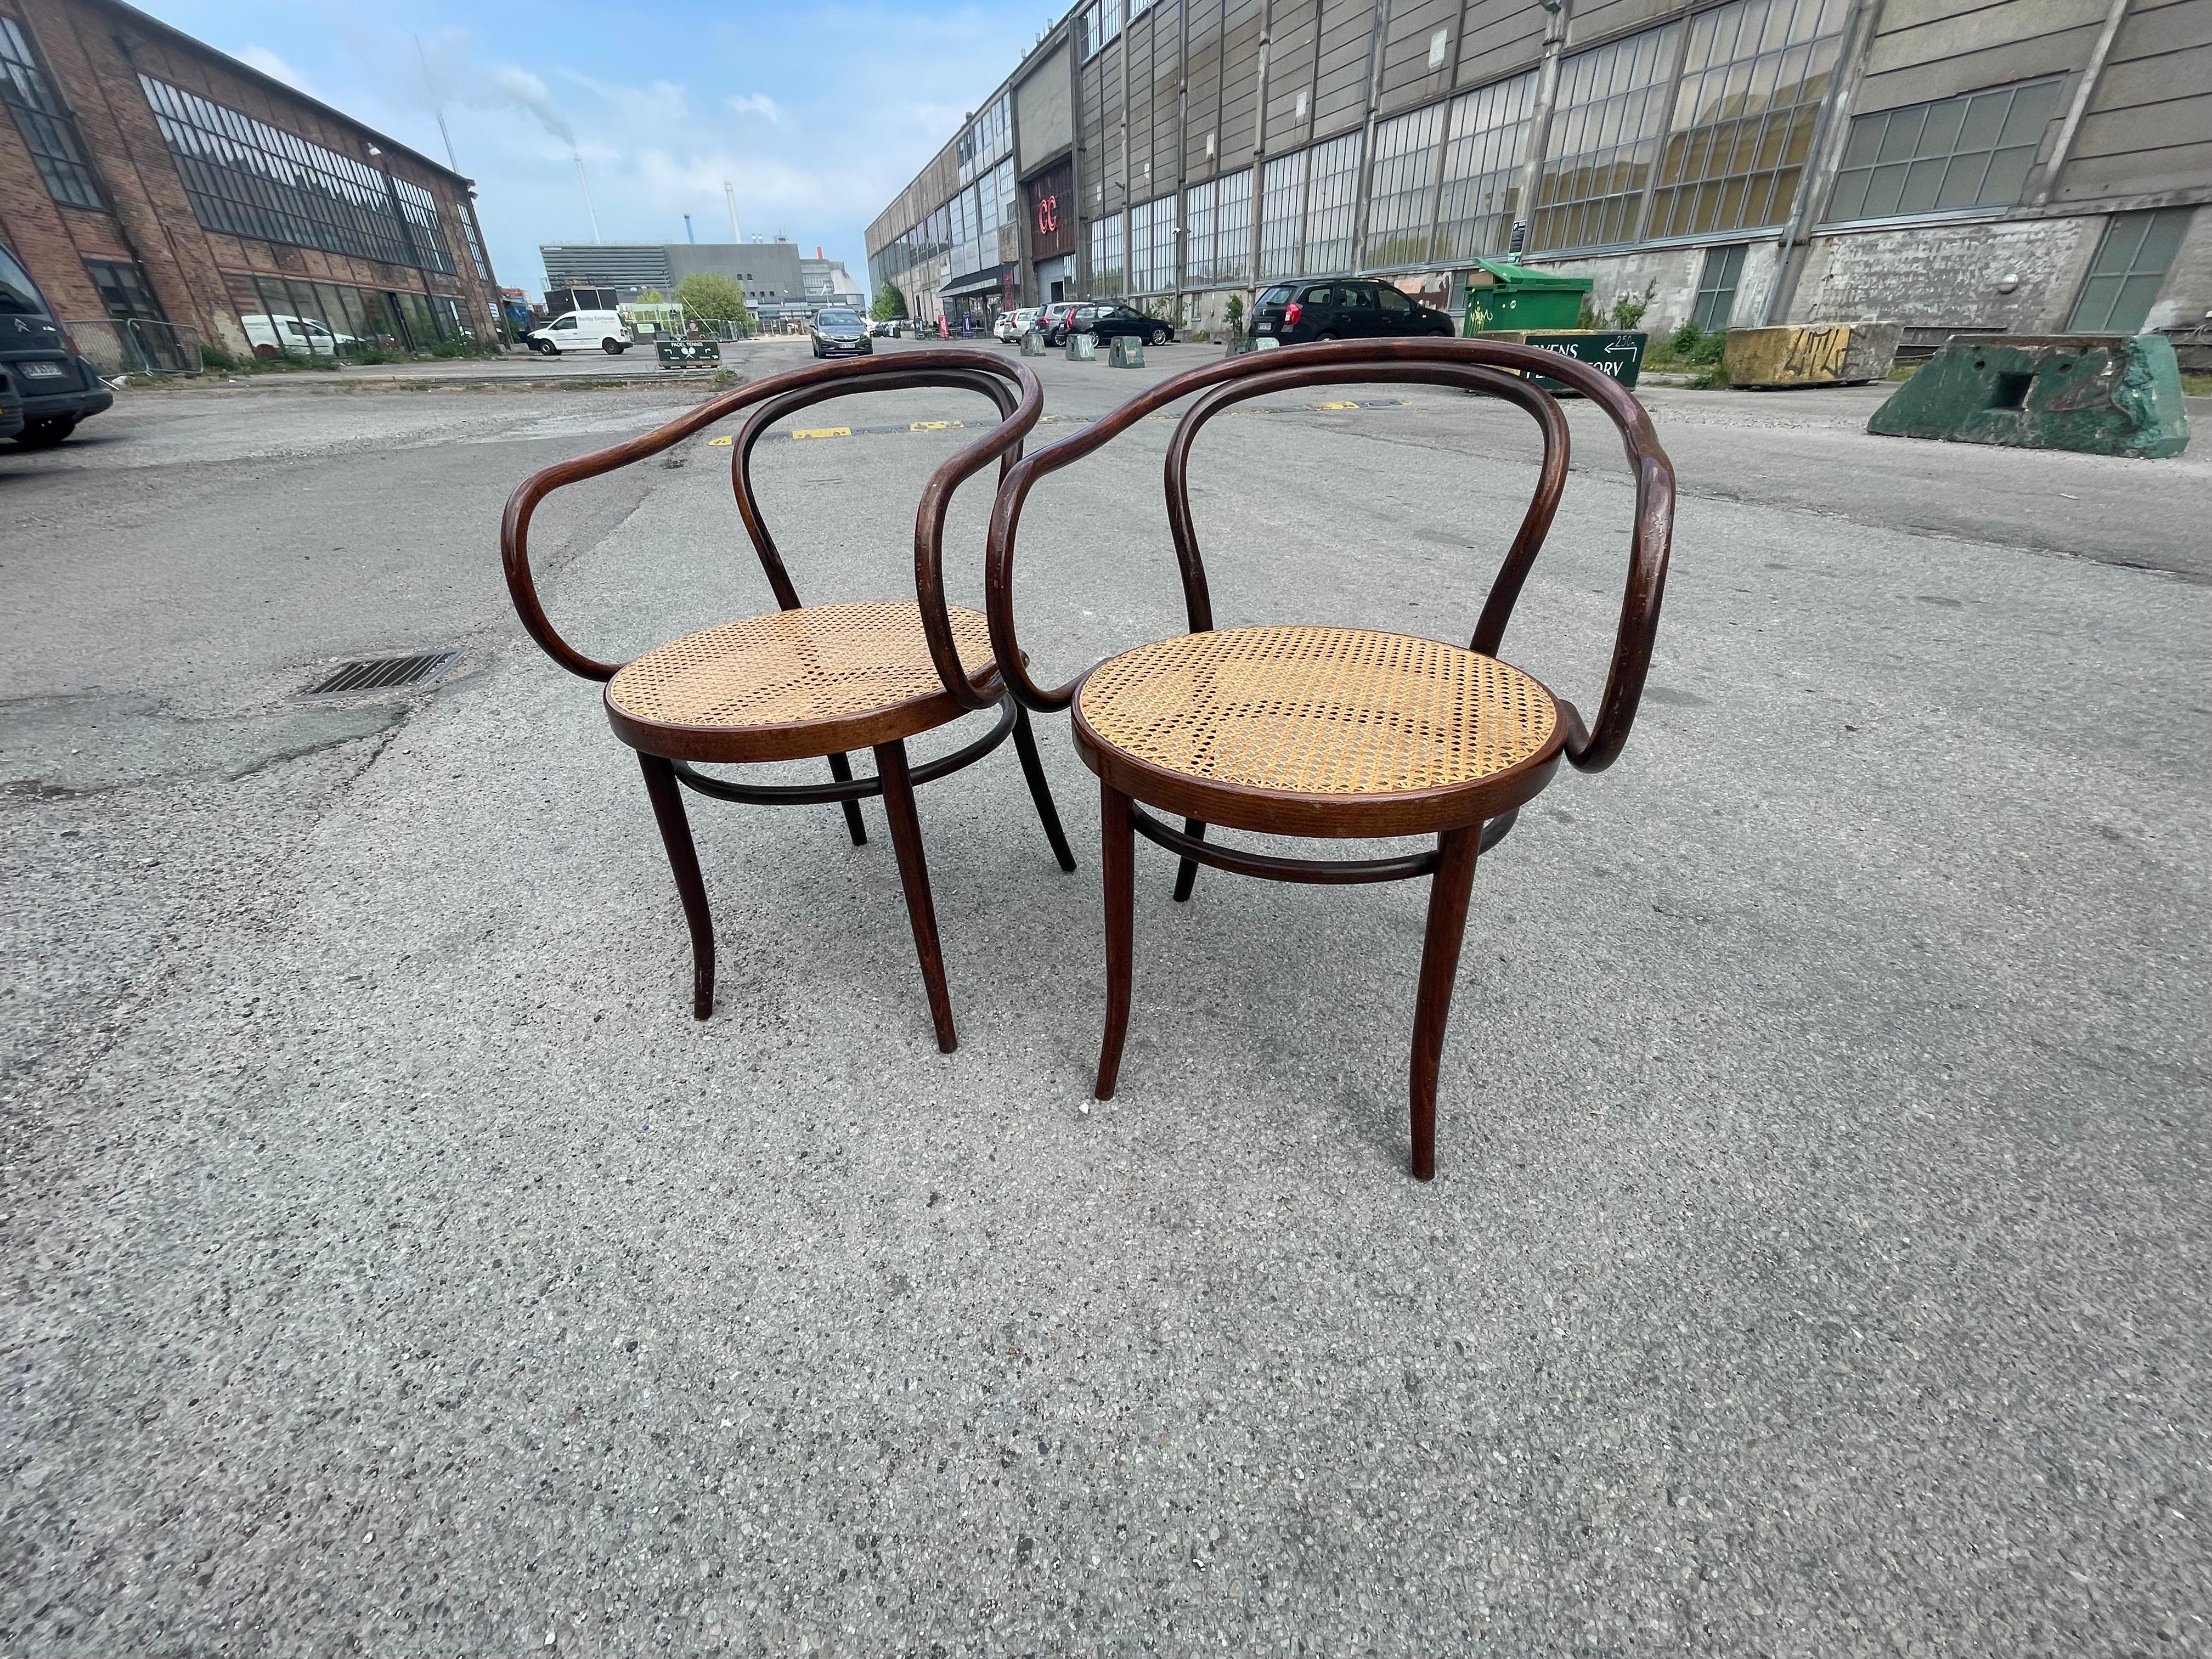 Bemerkenswerte Sesselgruppe, entworfen von Thonet und fachmännisch hergestellt von Ligna in den 1950er Jahren. Diese Sessel vereinen die visionäre Designästhetik von Thonet mit der Handwerkskunst von Ligna und strahlen Raffinesse und Charme aus. Von